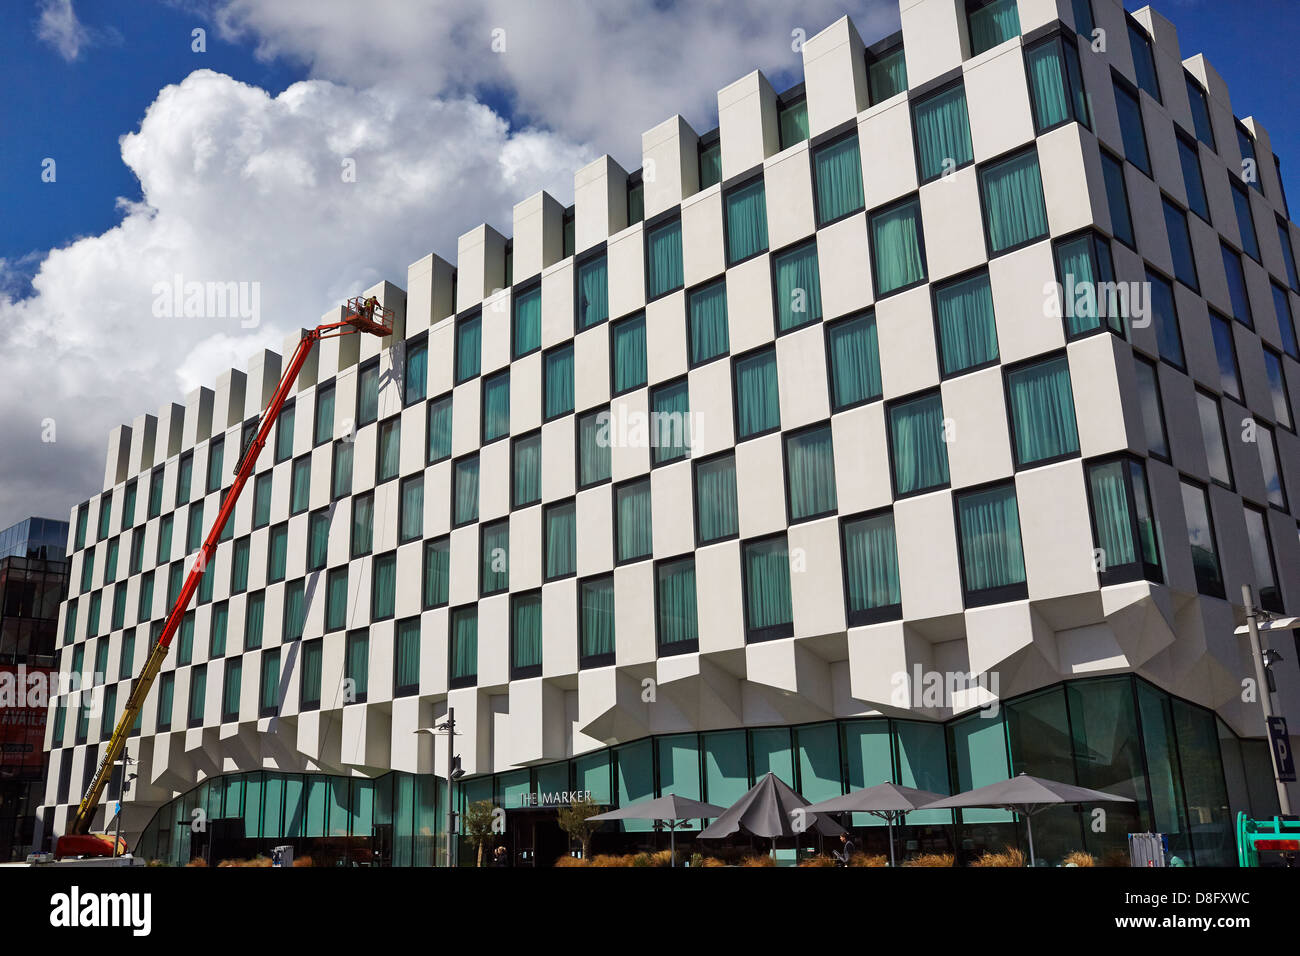 Le nettoyage de l'extérieur du marqueur, l'hôtel Grand Canal Docks, Dublin, Irlande Banque D'Images